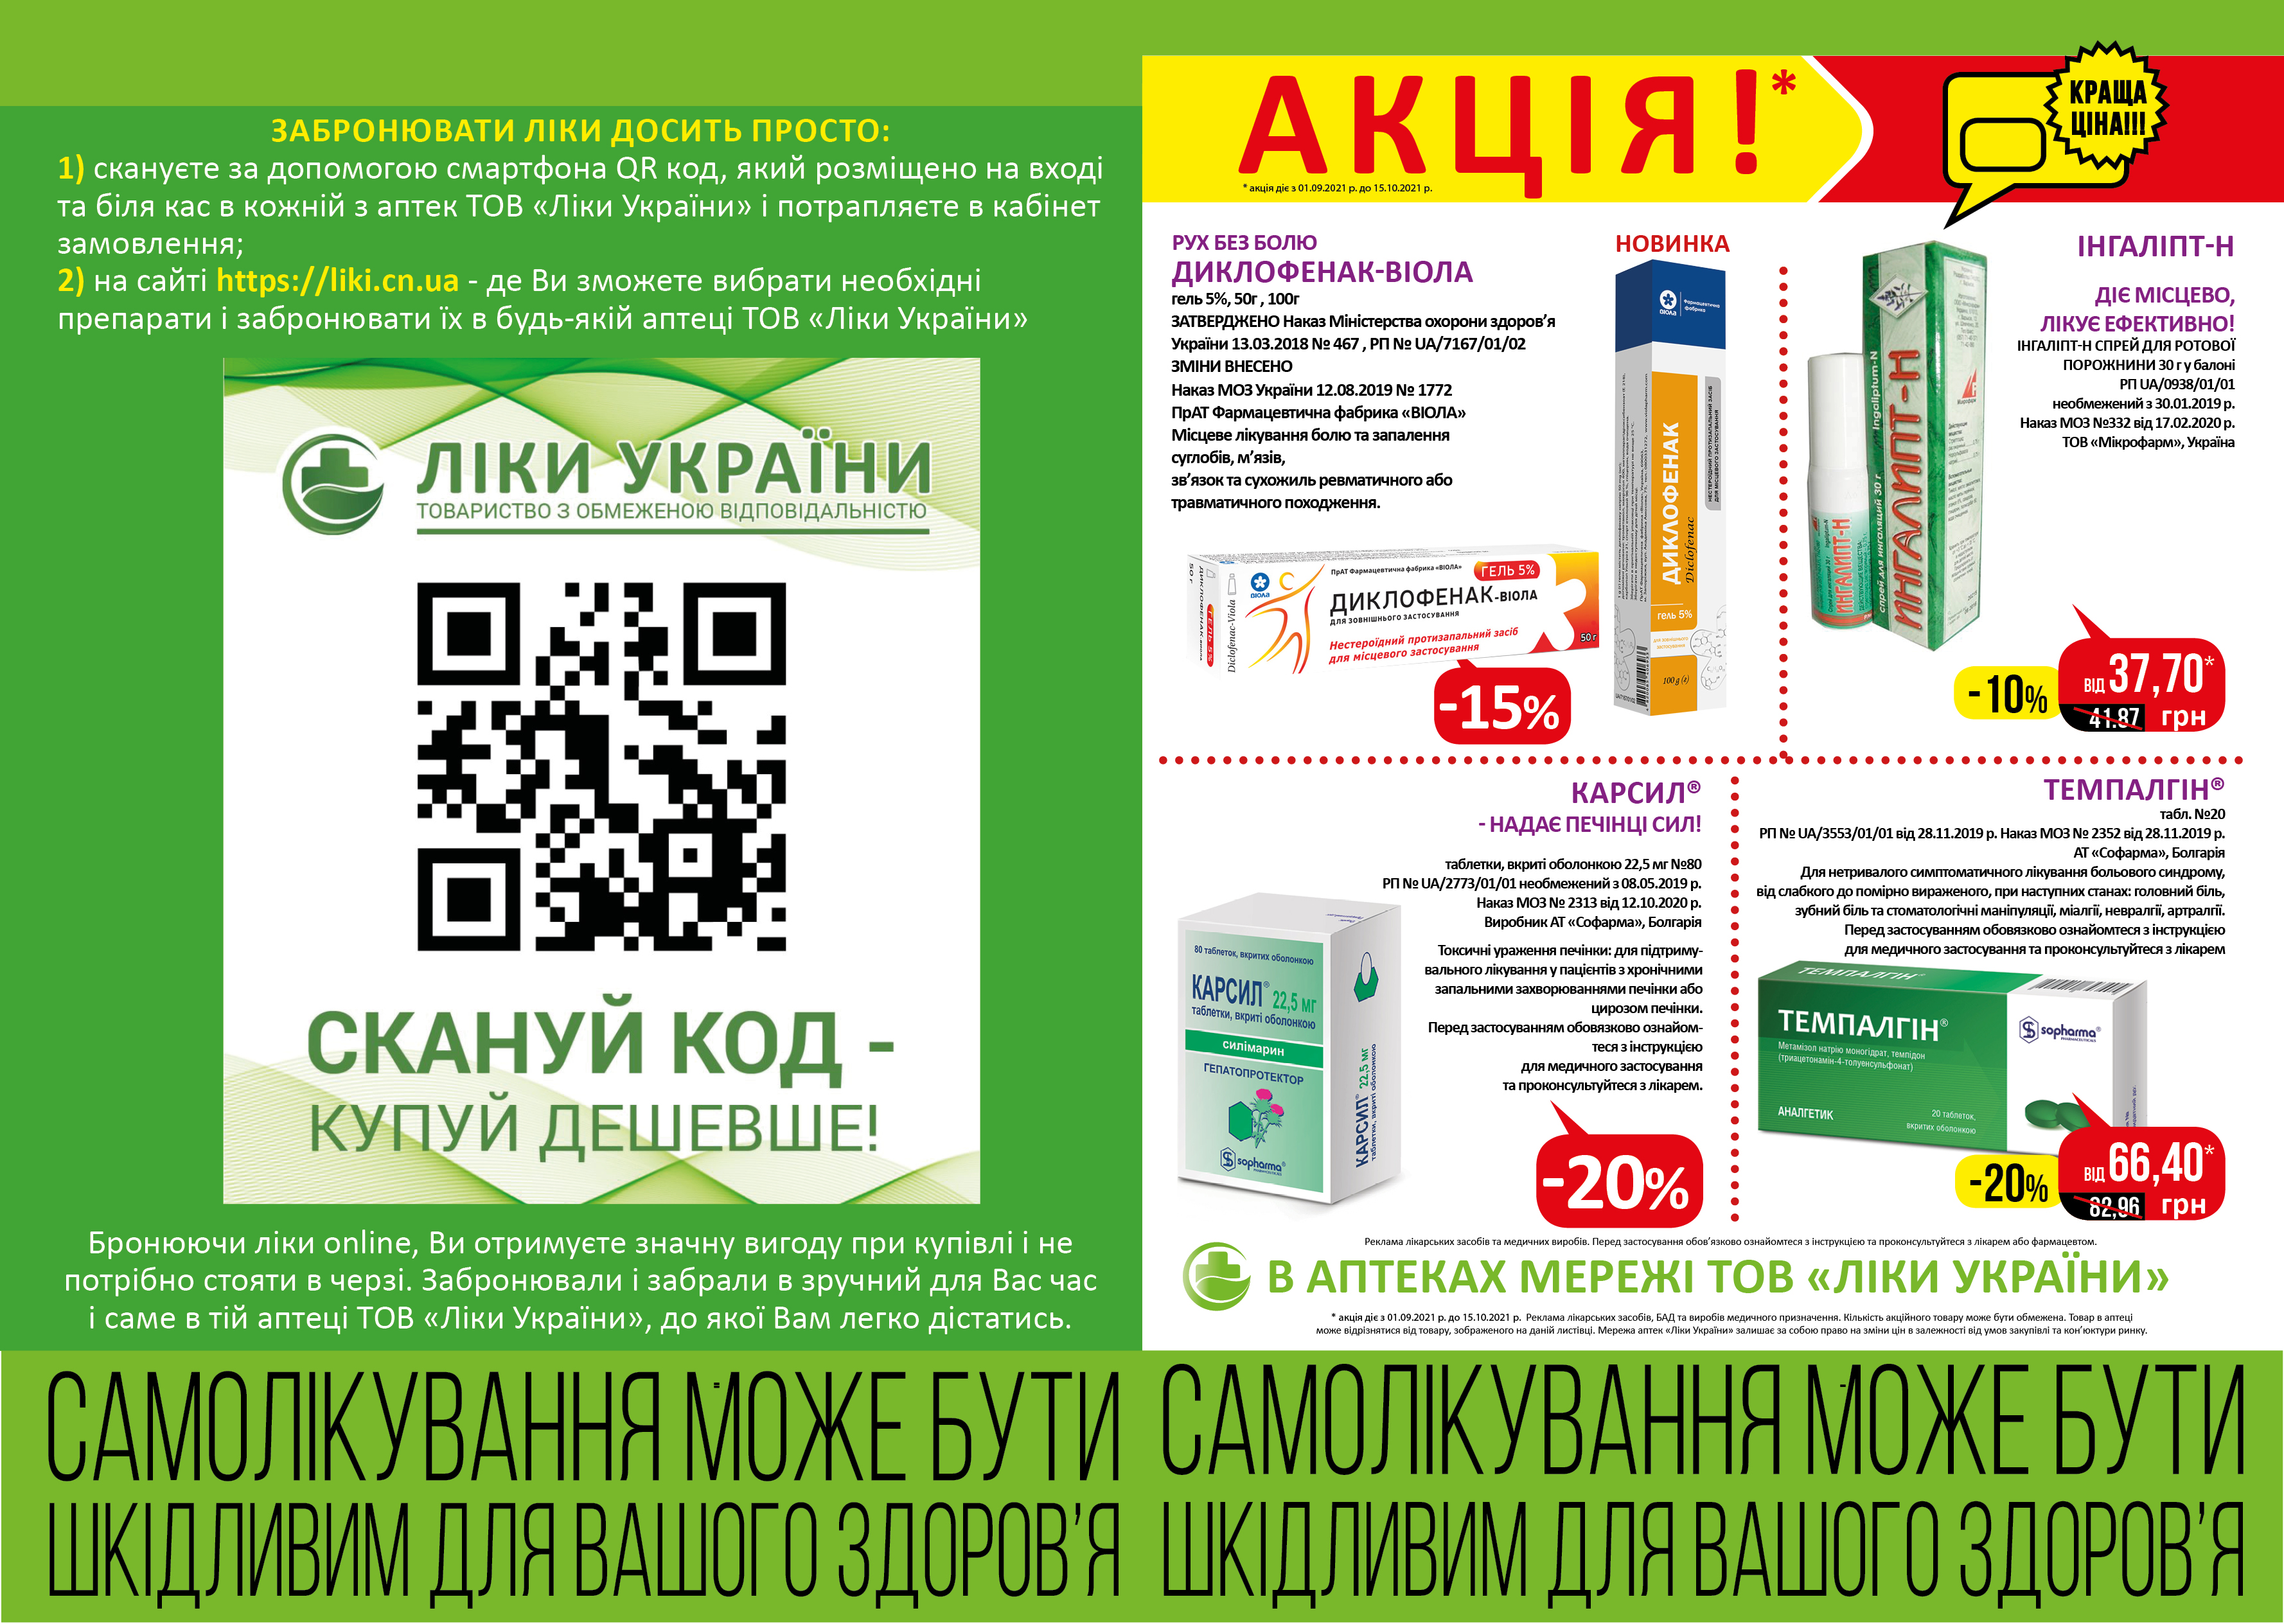 В аптеках мережі ТОВ "Ліки України" з 01.09 по 15.10 діє акція. 